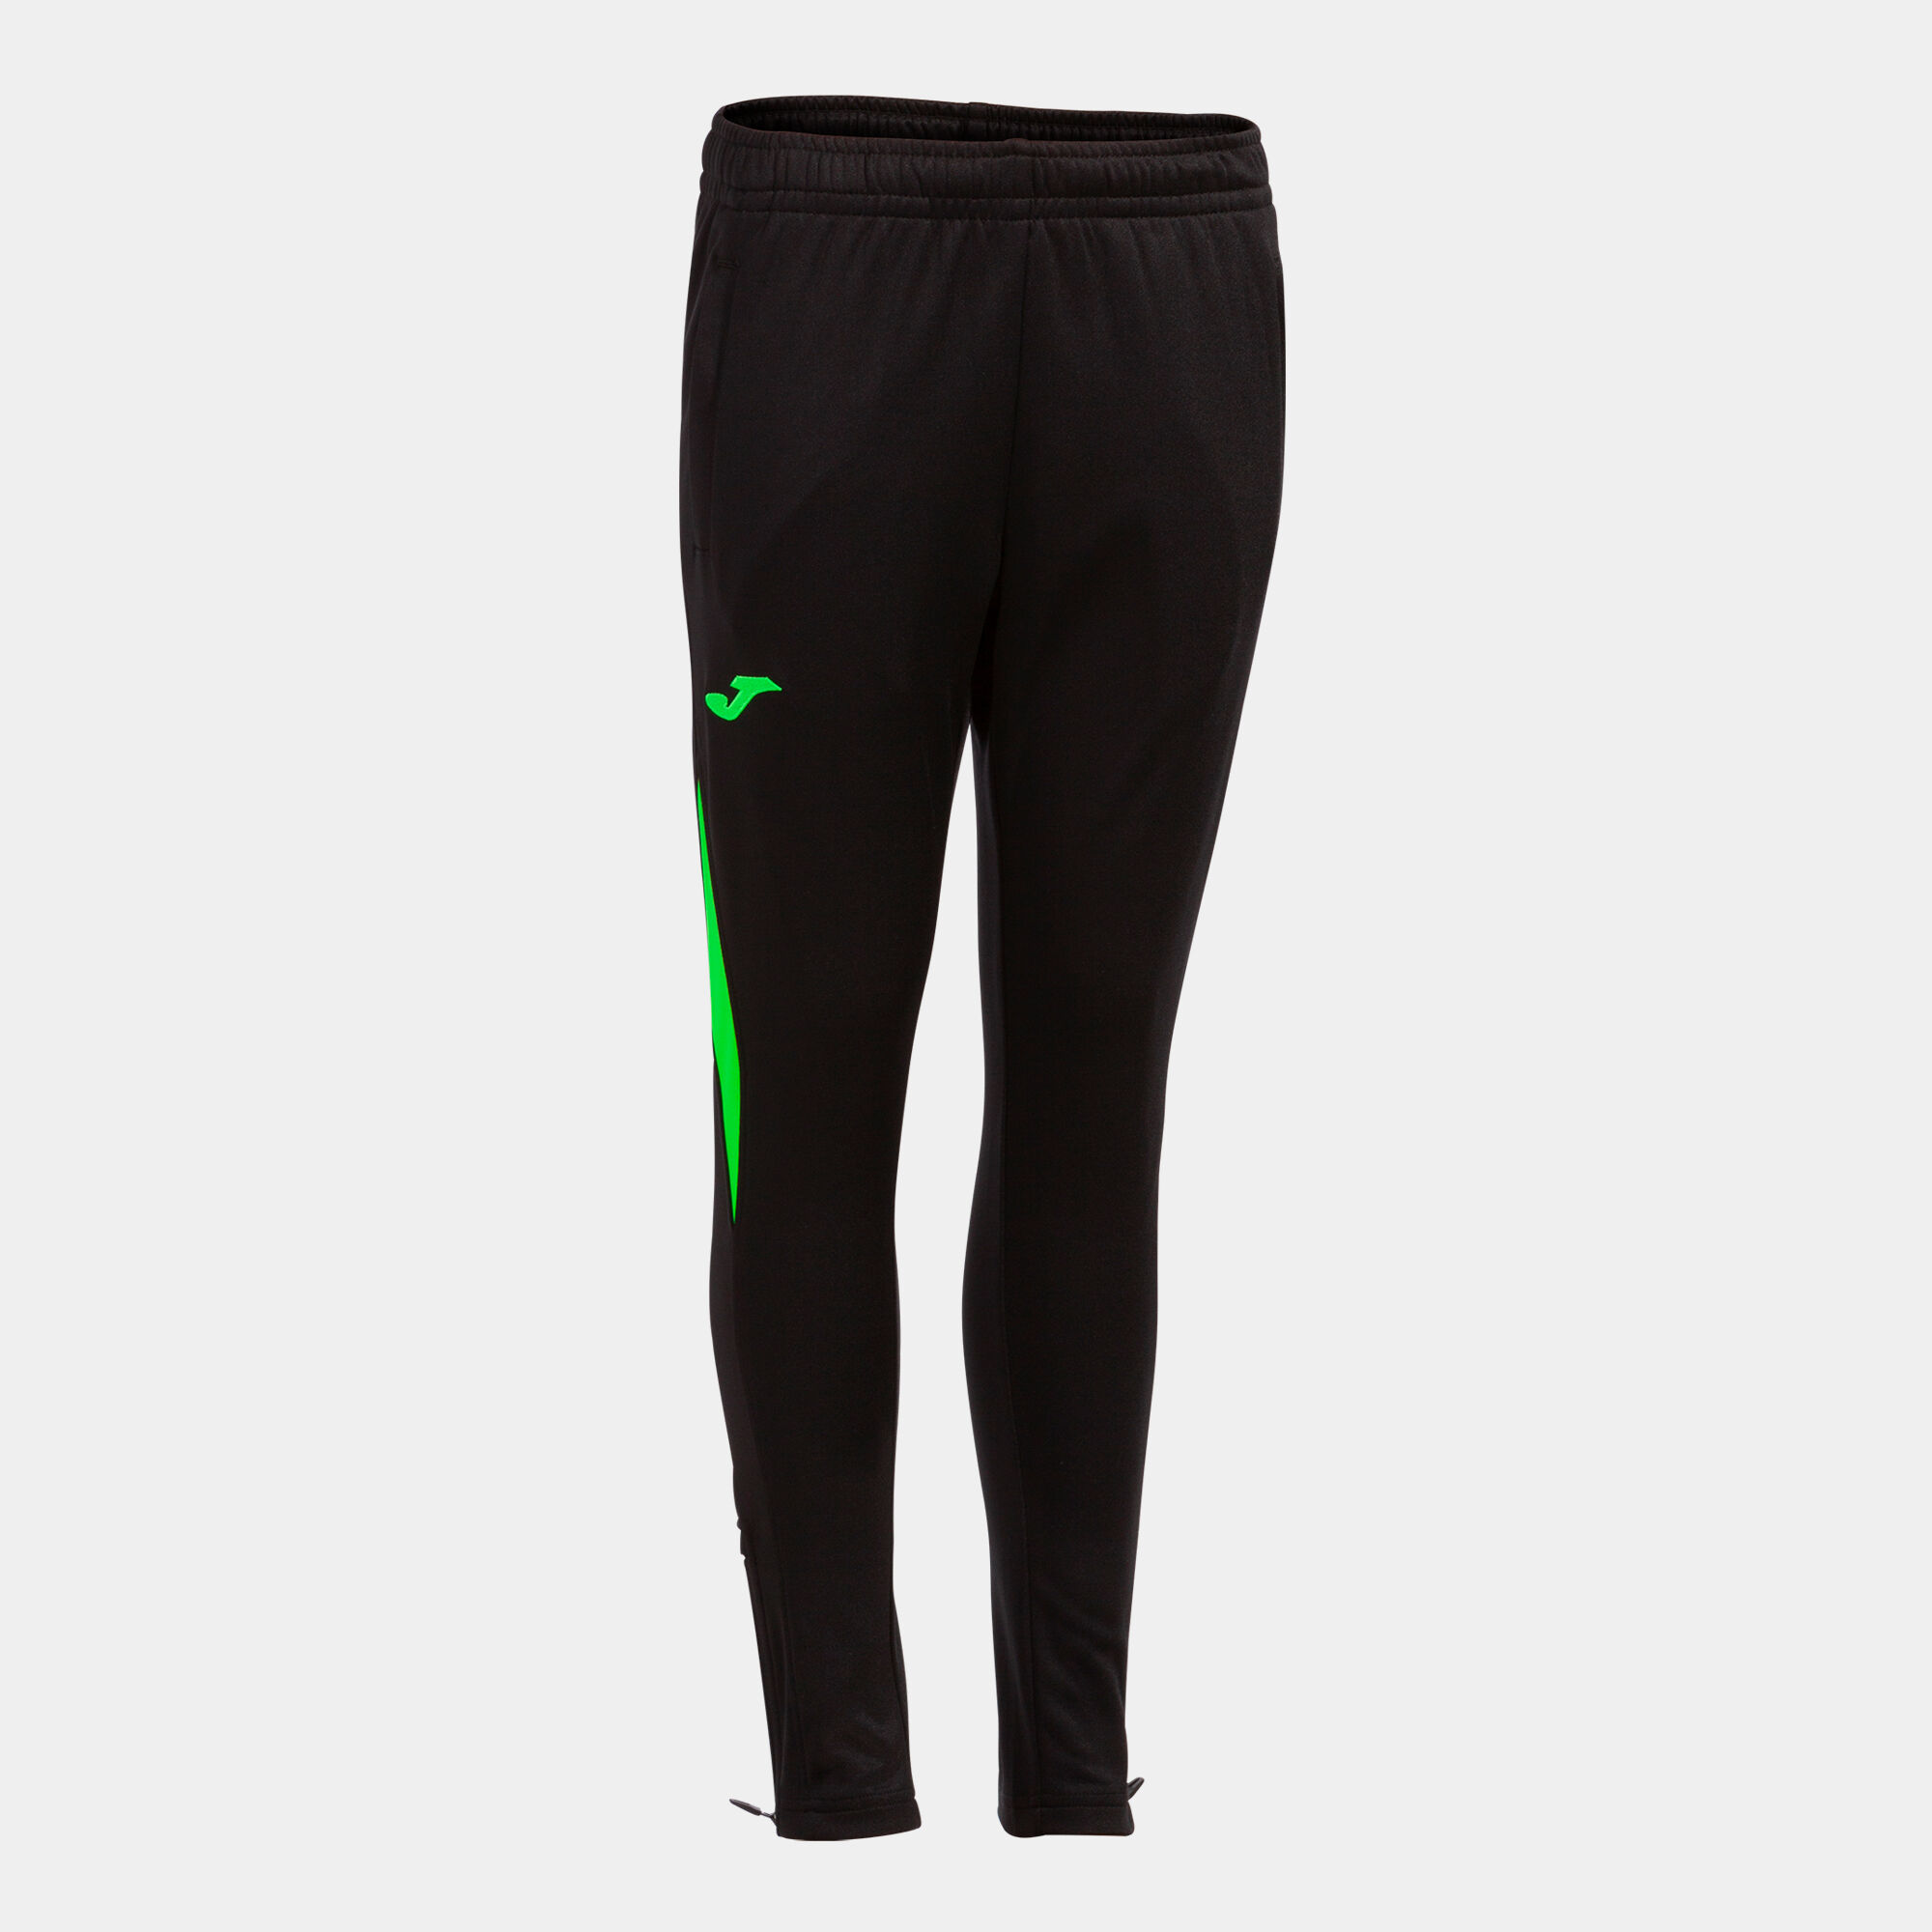 Pantalone lungo uomo Championship VII nero verde fluorescente